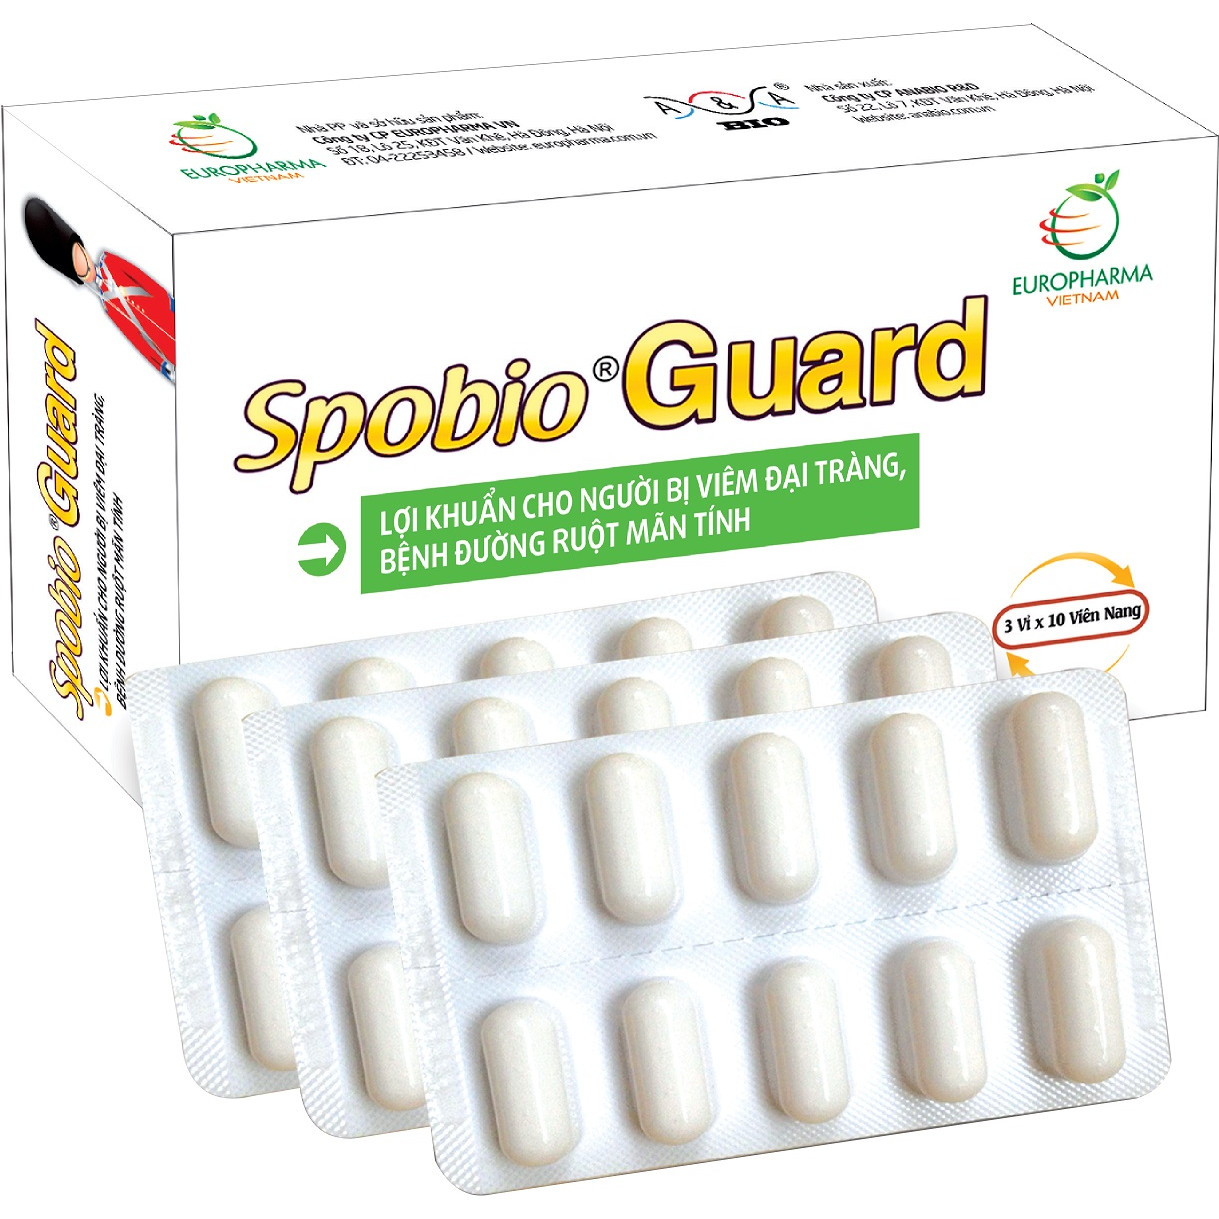 Spobio Guard - Bào tử lợi khuẩn cho người bị viêm đại tràng, bệnh đường ruột mãn tính